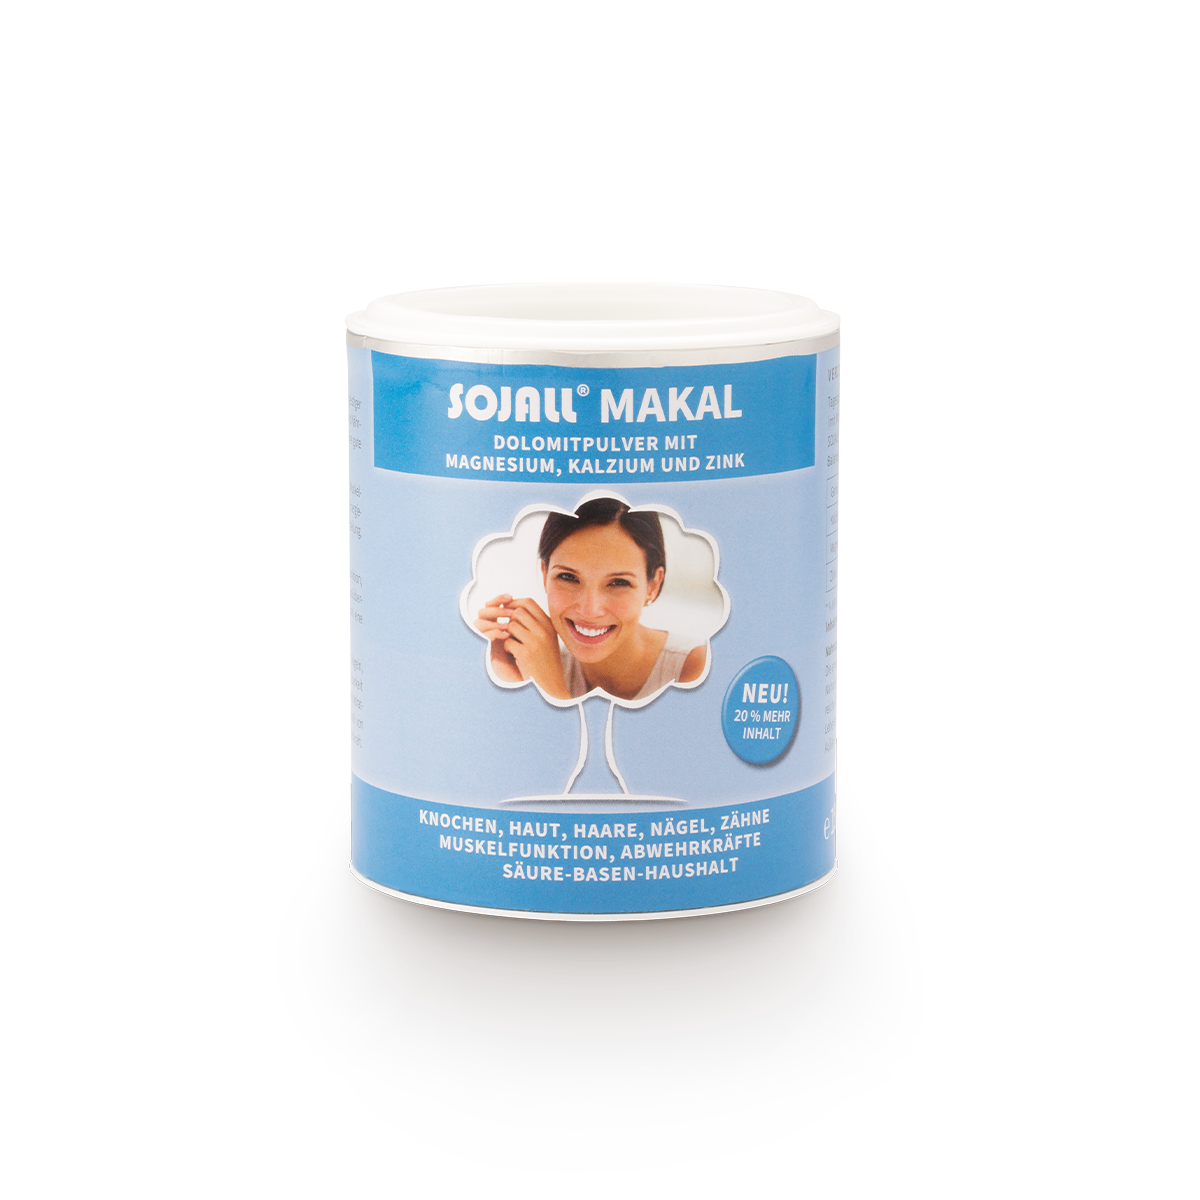 Sojall® Makal Dolomitpulver mit Magnesium, Kalzium und Zink 150 g